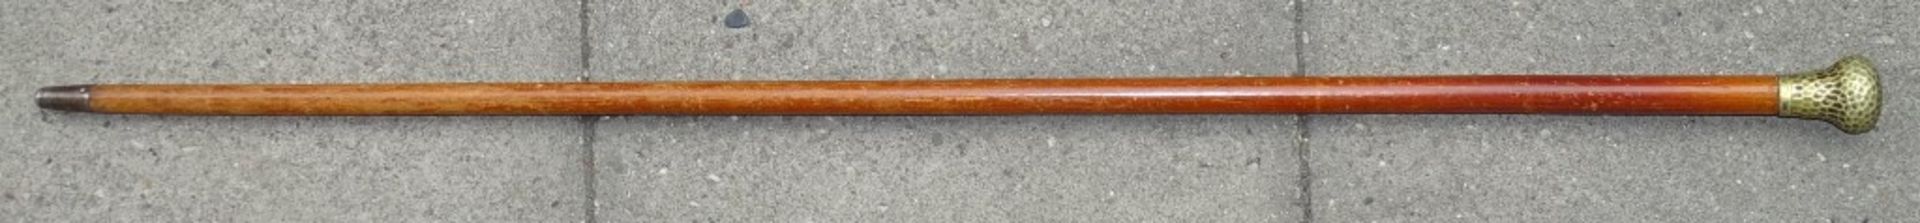 Gehstock,Holz mit Hammerschlagdekor Griff,Griff lose,L- 89cm - Bild 4 aus 4